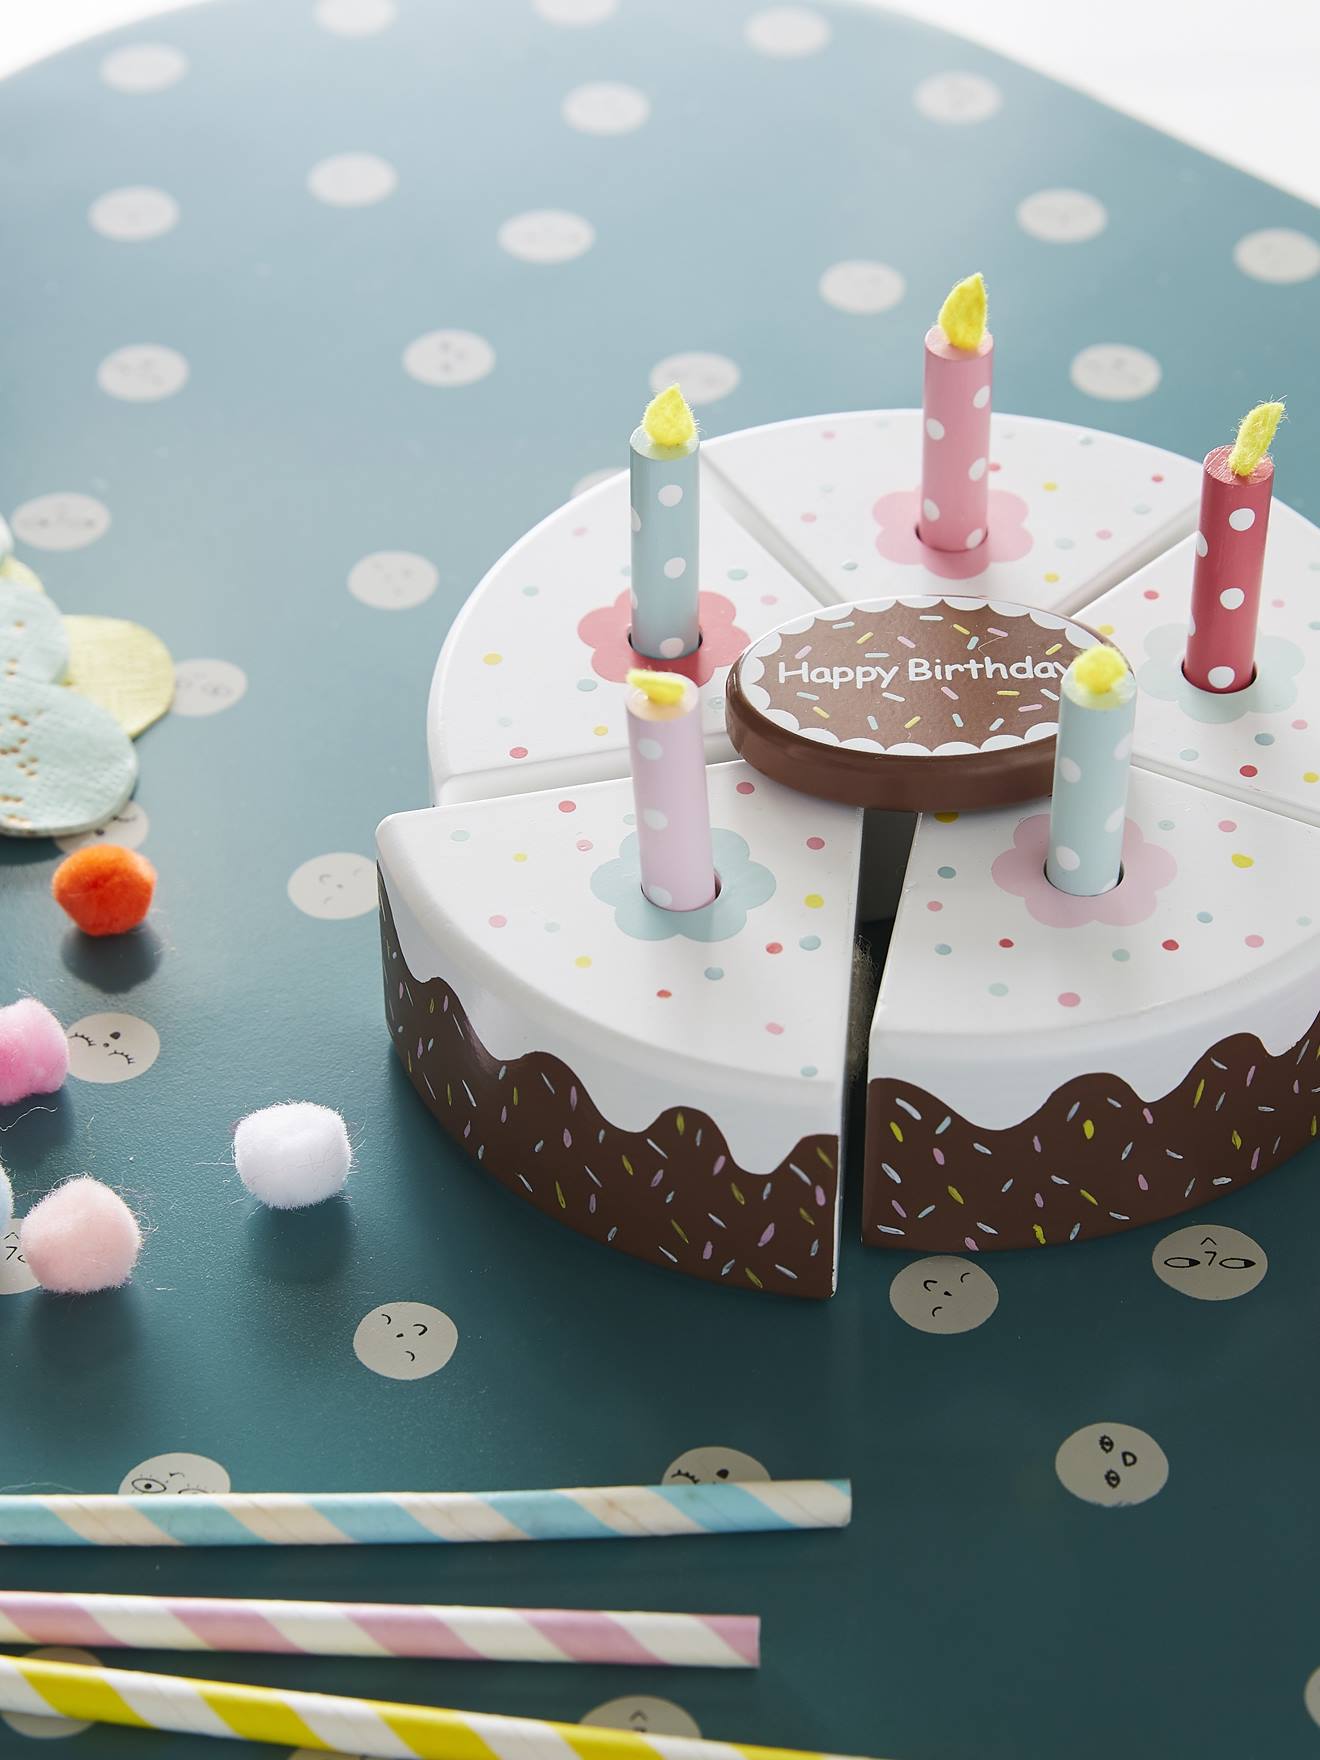 24pcs gâteau d'anniversaire en bois semblable à un jouet de jeu d